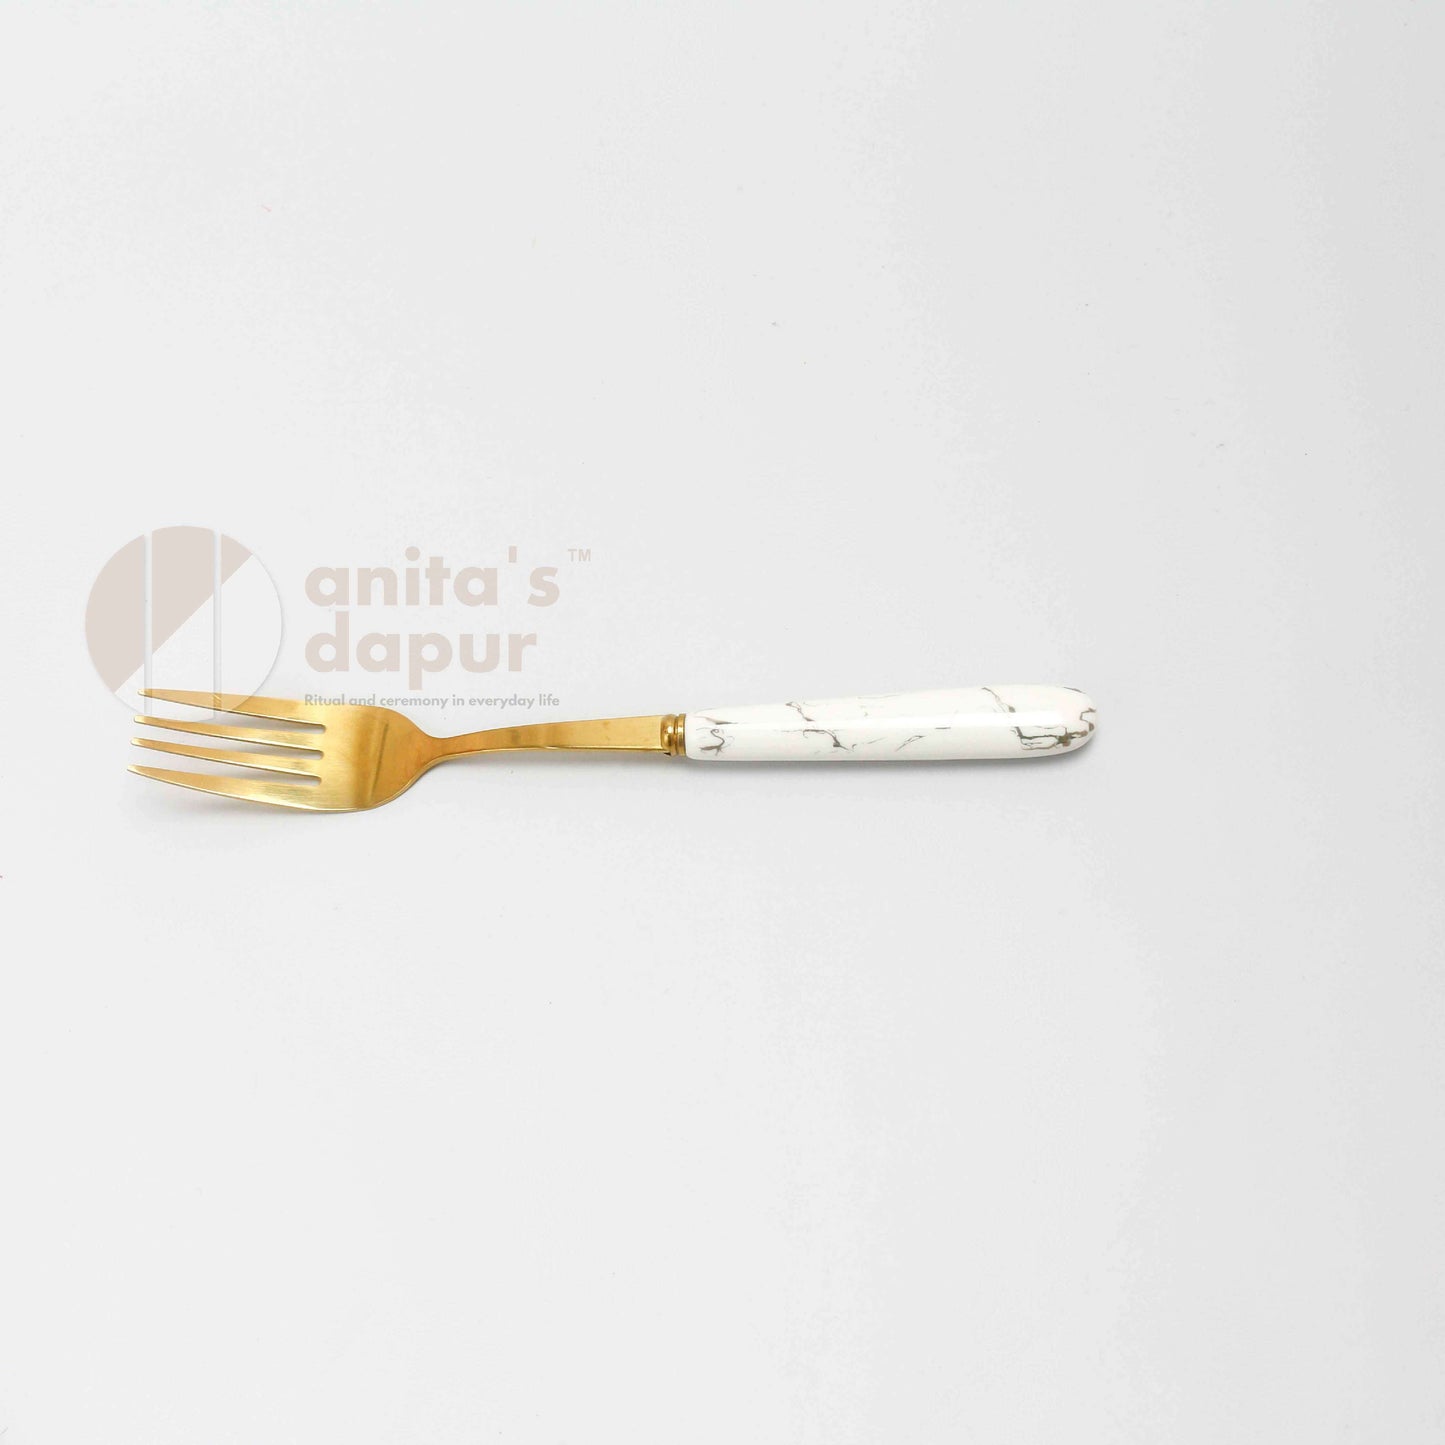 Cutlery Set (24pcs)